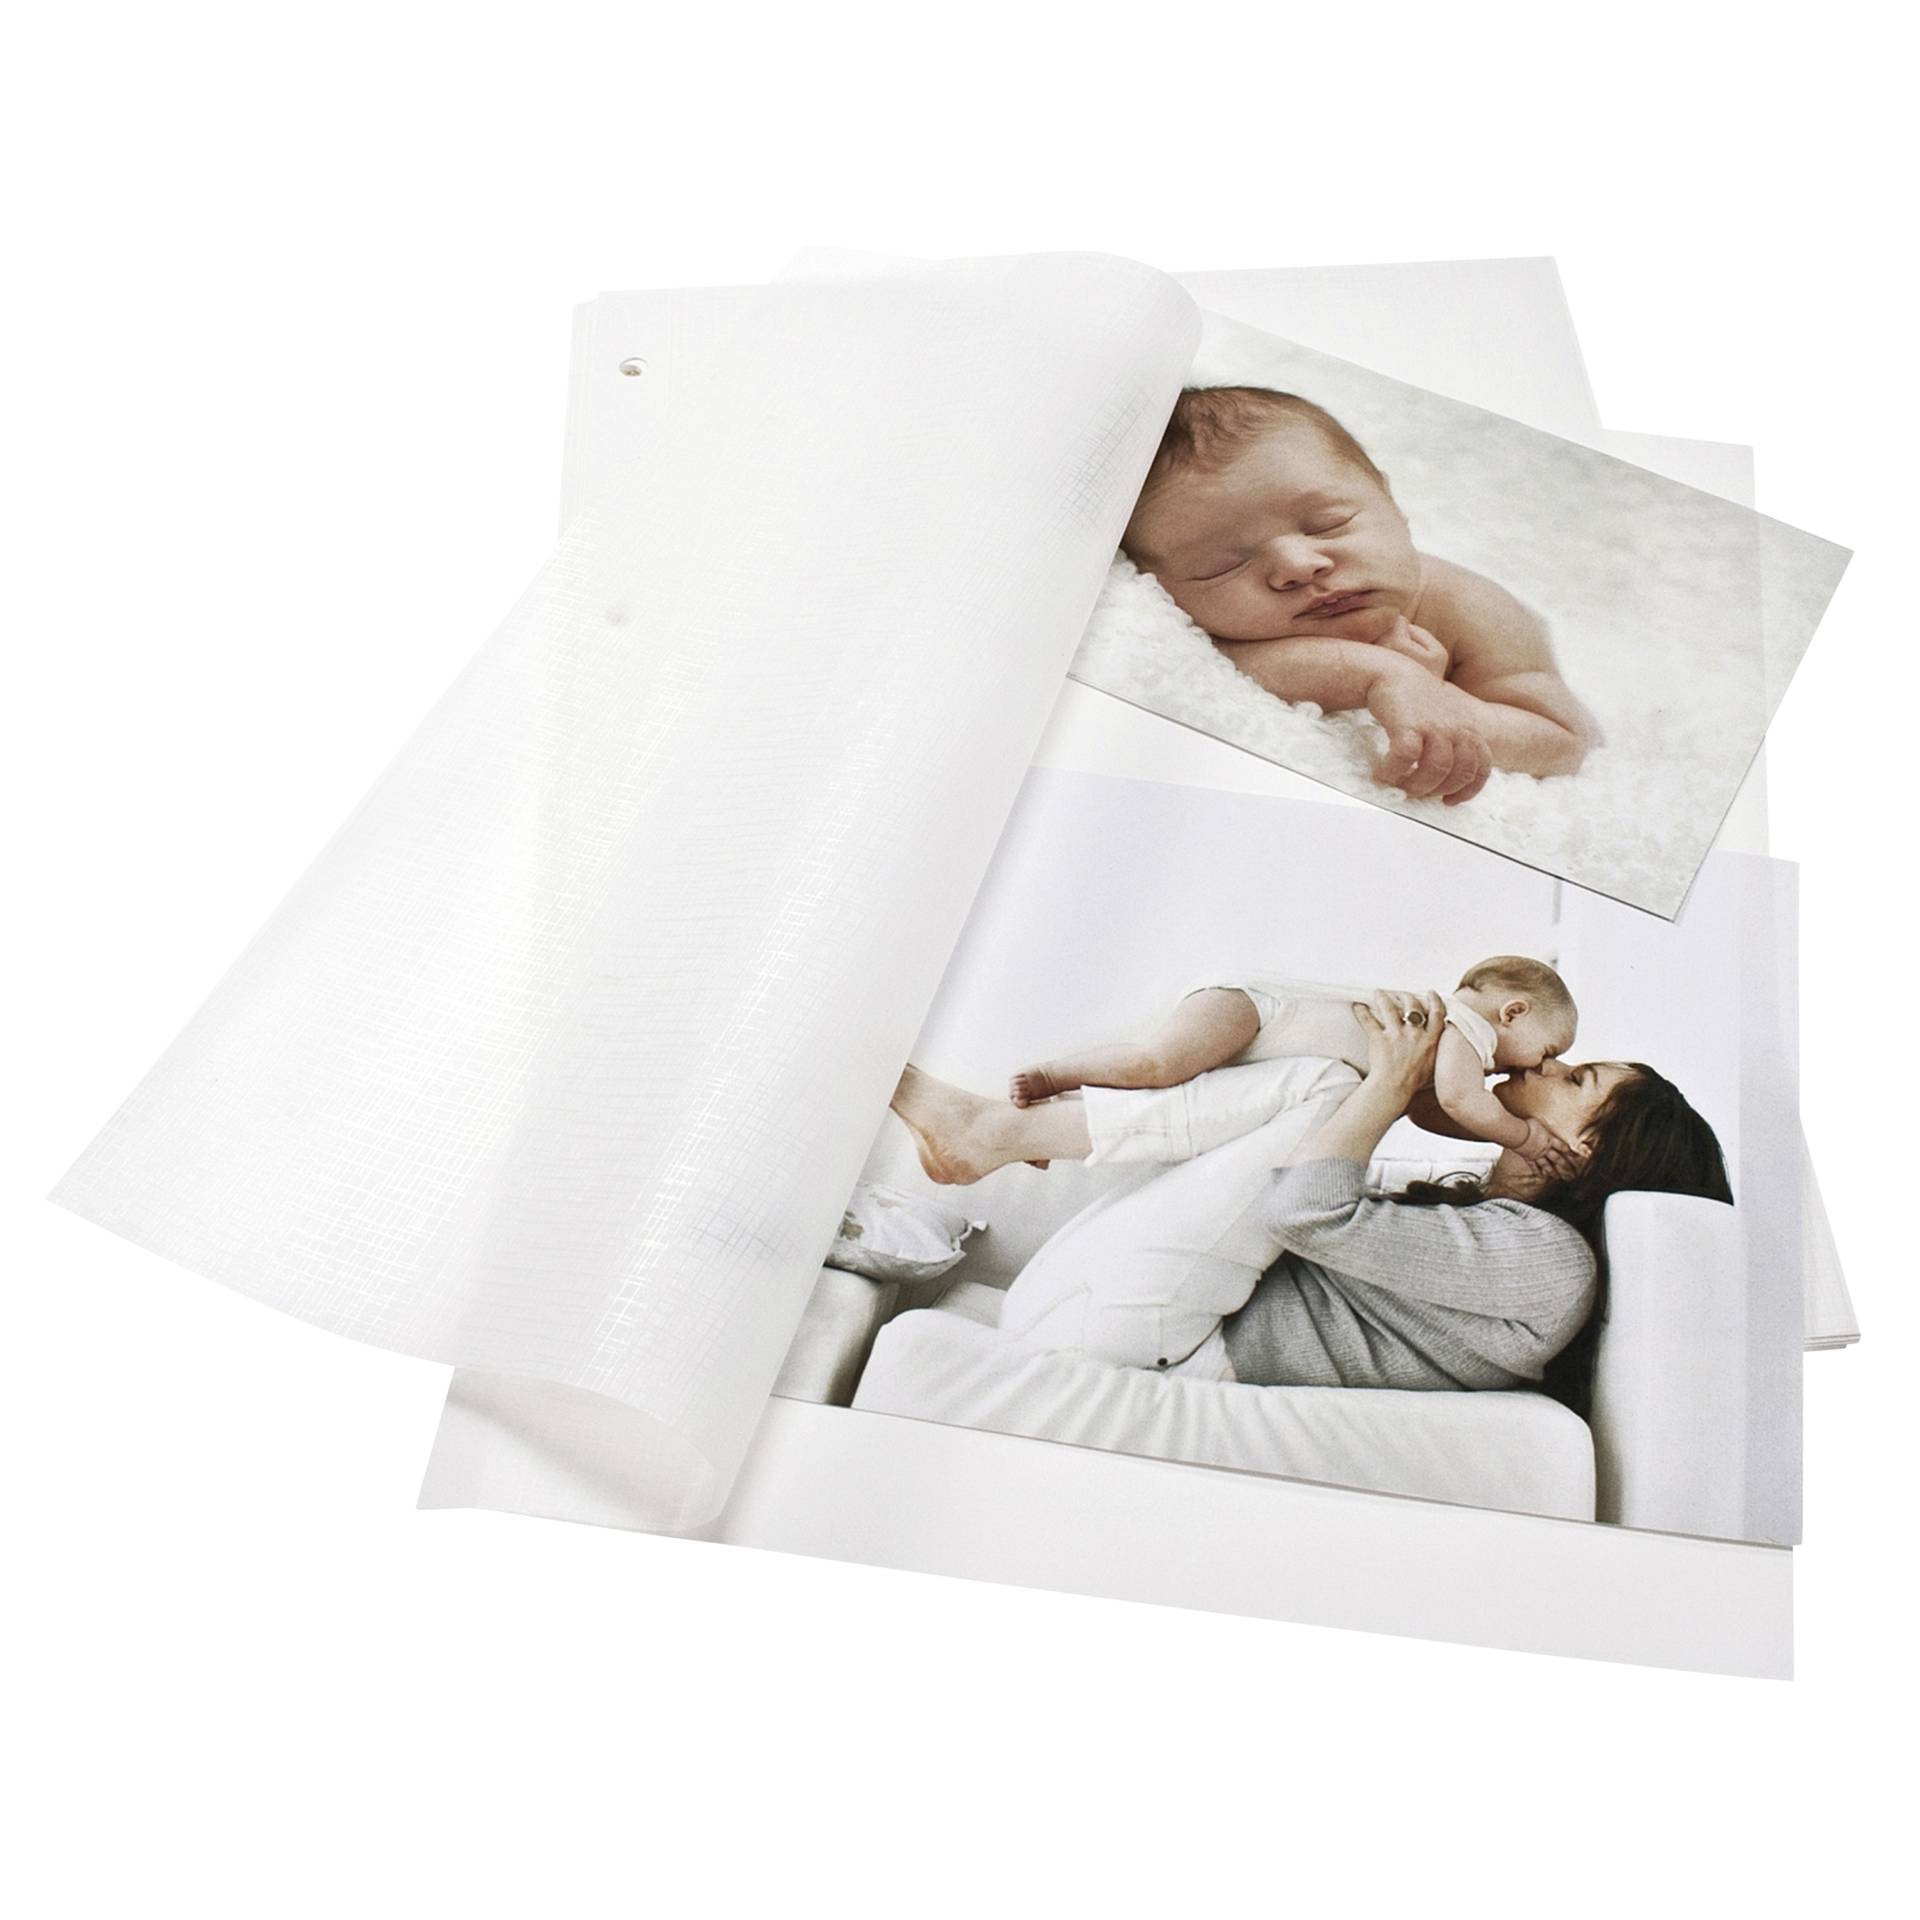 Goldbuch Fotokarton weiß DIN A4 mit Pergamin 20 Blatt      83001